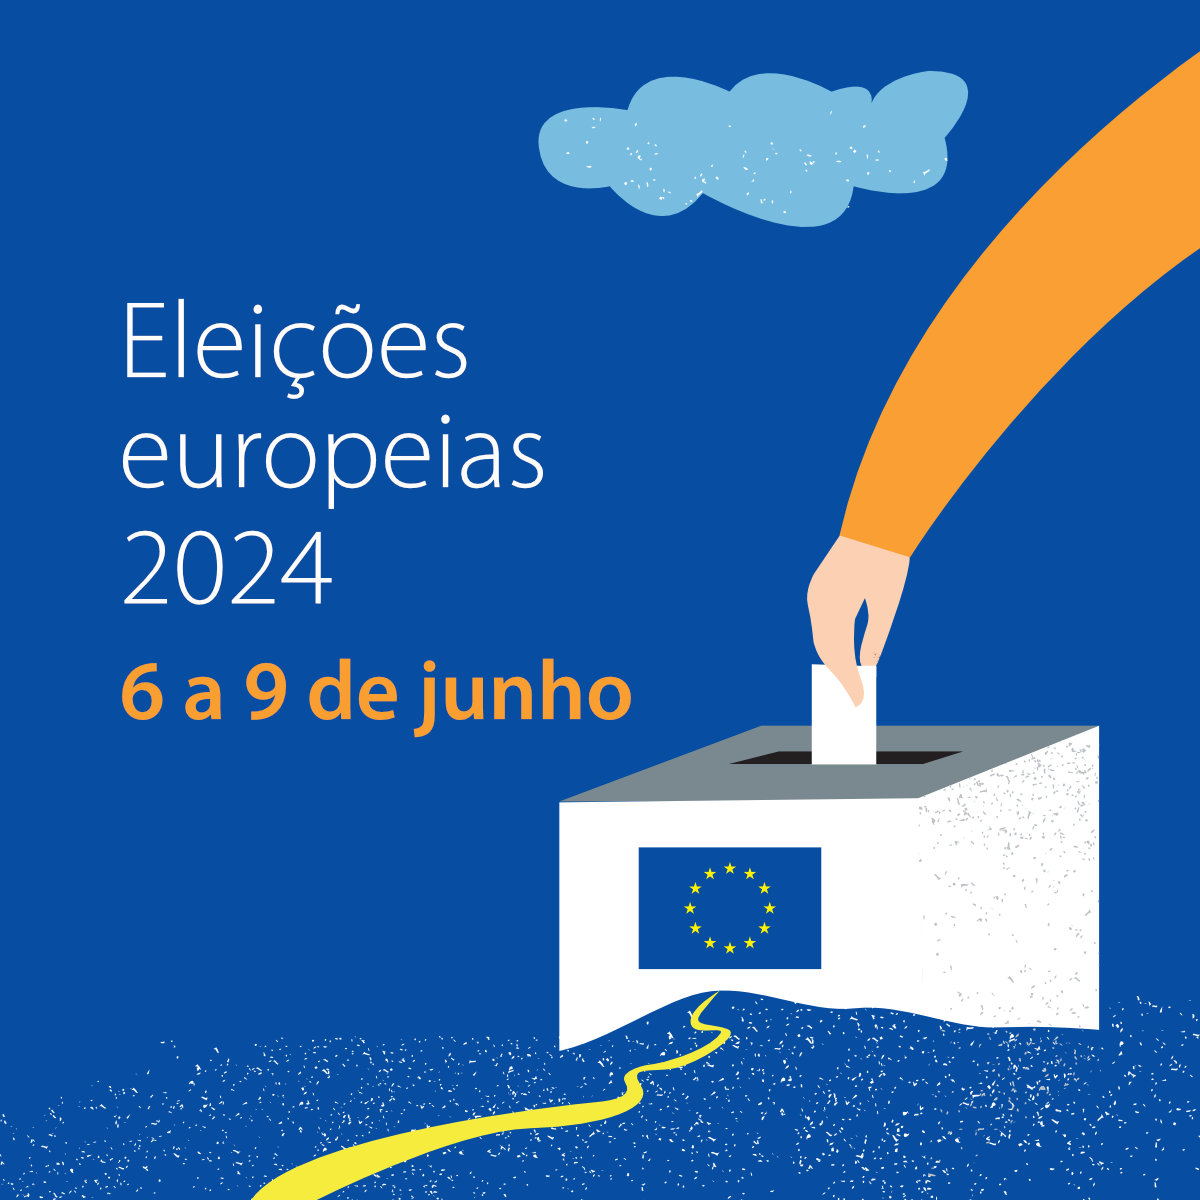 Eleições europeias 2024 - Square